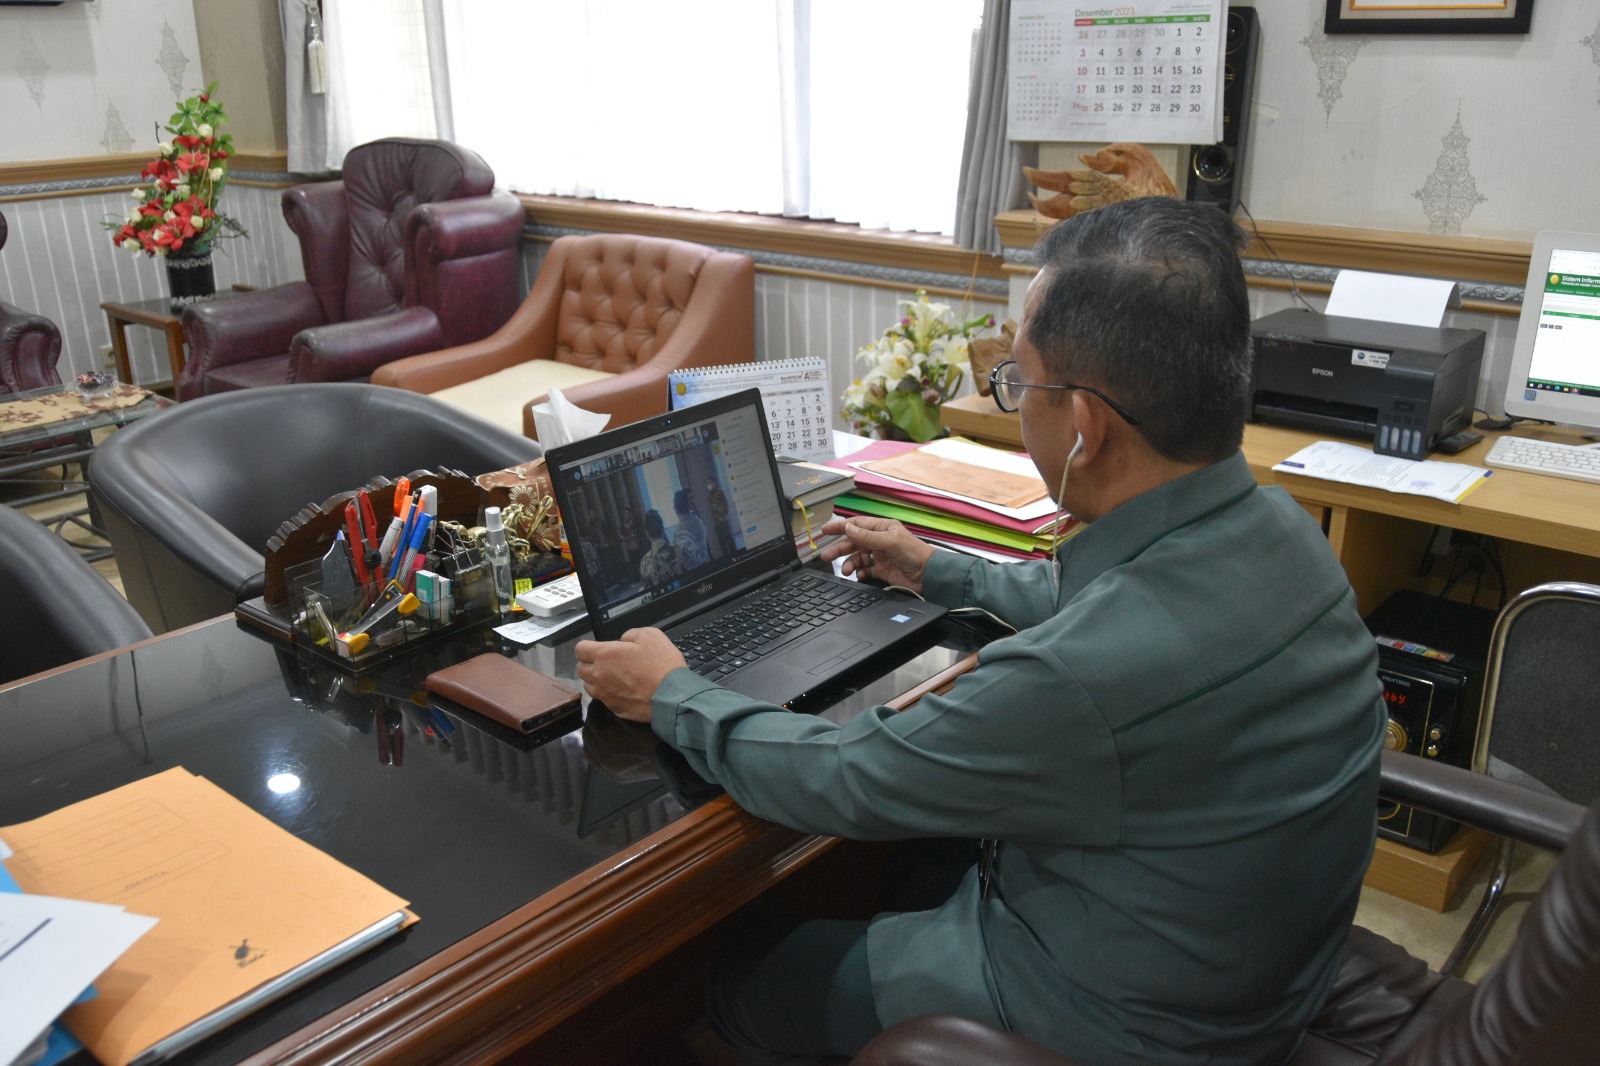 Ketua Pengadilan Negeri Yogyakarta Mengikuti Webinar bersama antara Mahkamah Agung RI dan Kementerian Agraria dan Tata Ruang/Kepala Badan Pertahanan Nasional